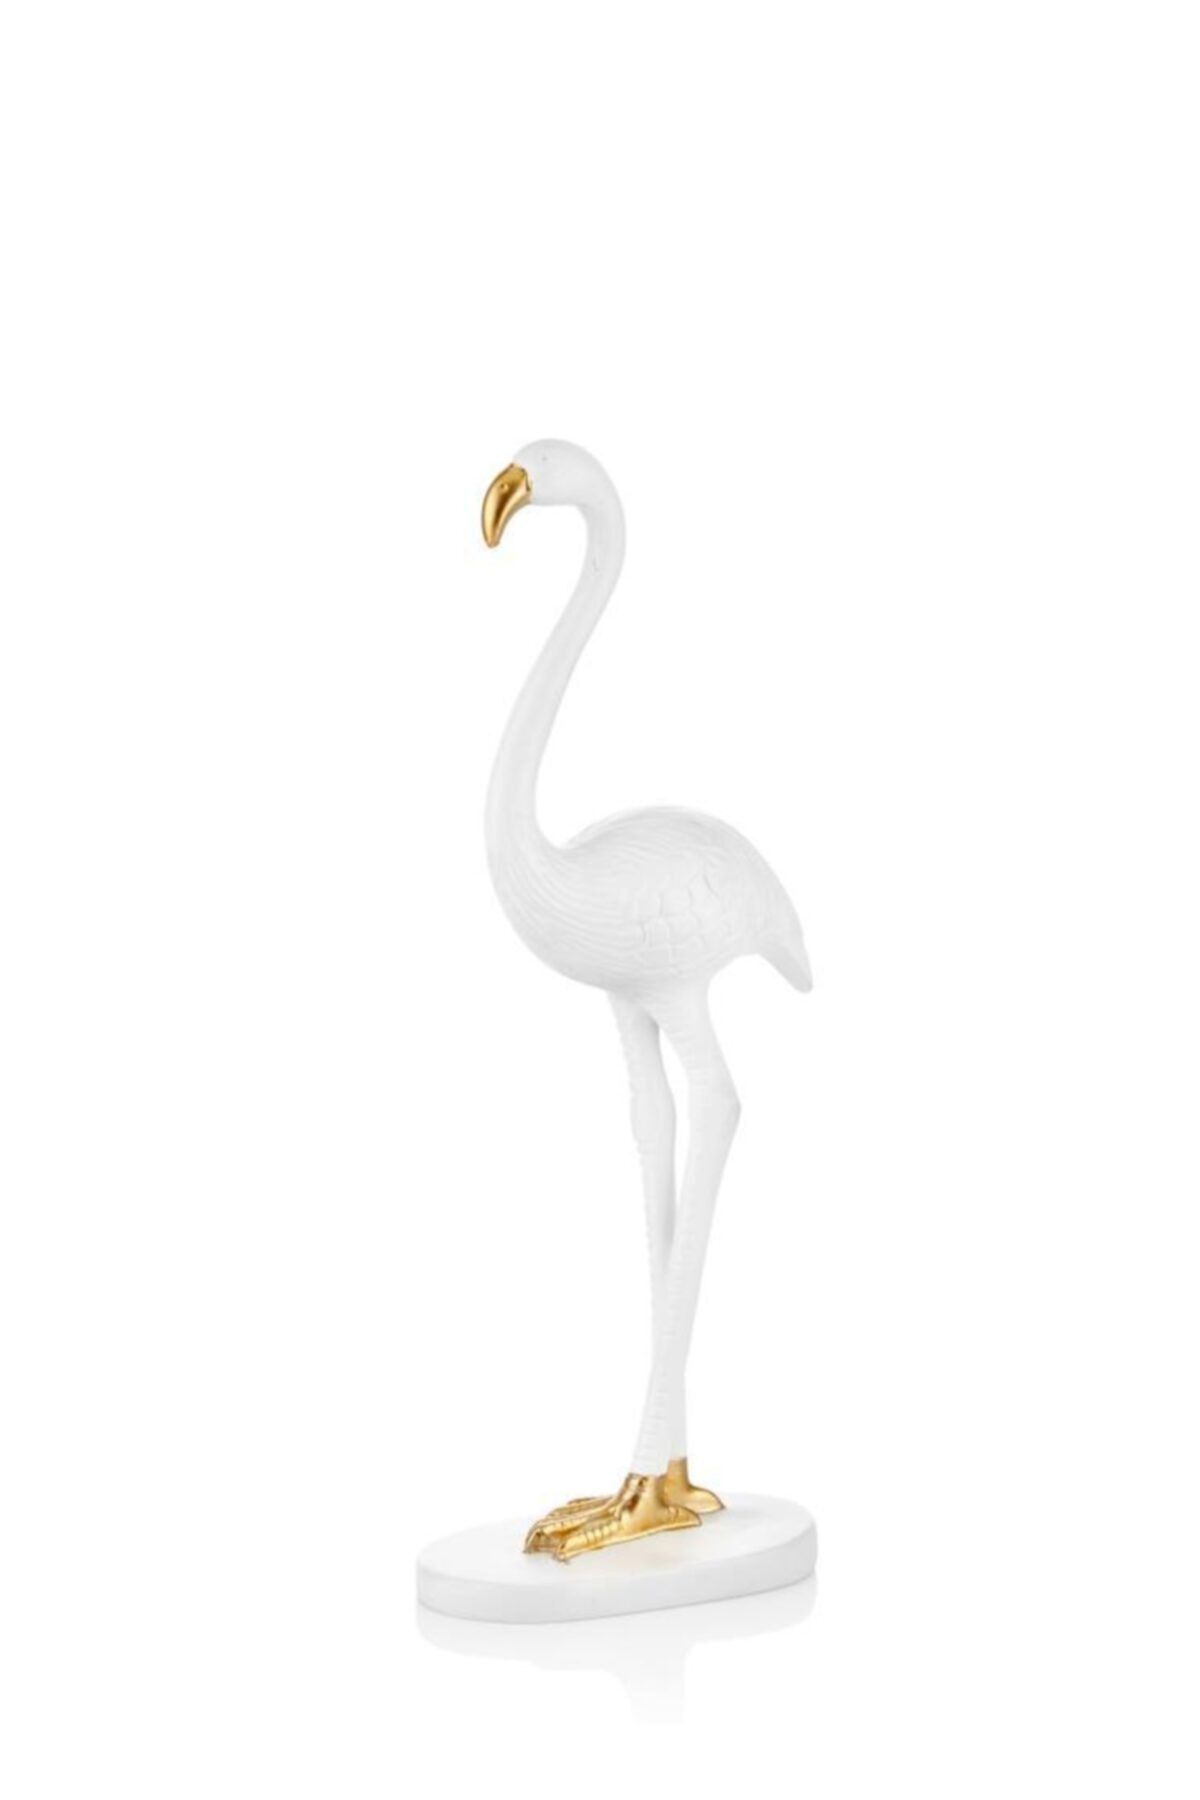 Çiçekmisin Flamingo Masaüstü Dekoratif Obje 33 cm - Beyaz